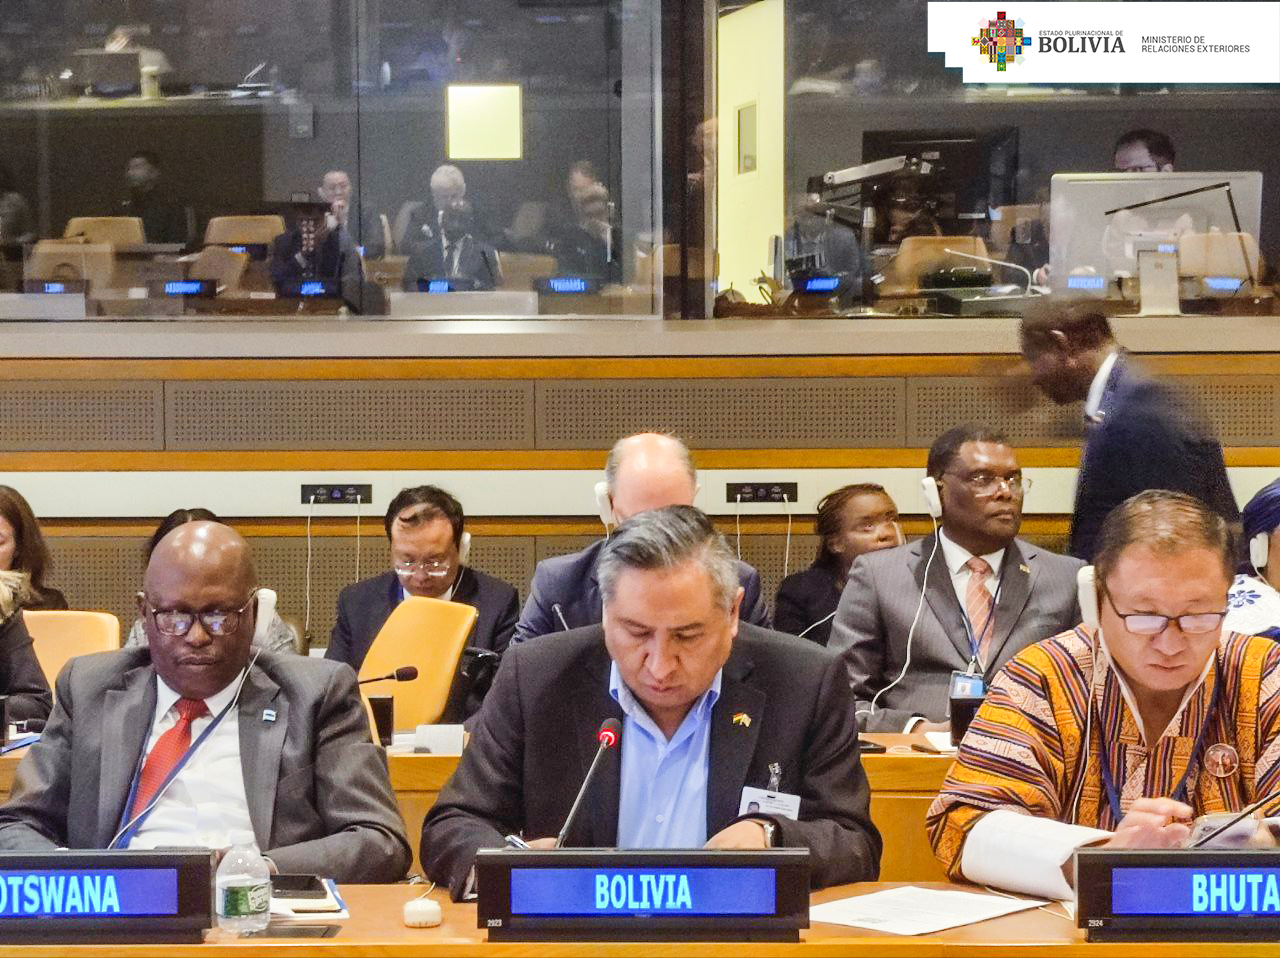 En la reunión de países en desarrollo sin litoral, el Canciller Mayta destaca los avances de Bolivia a pesar de esta condición